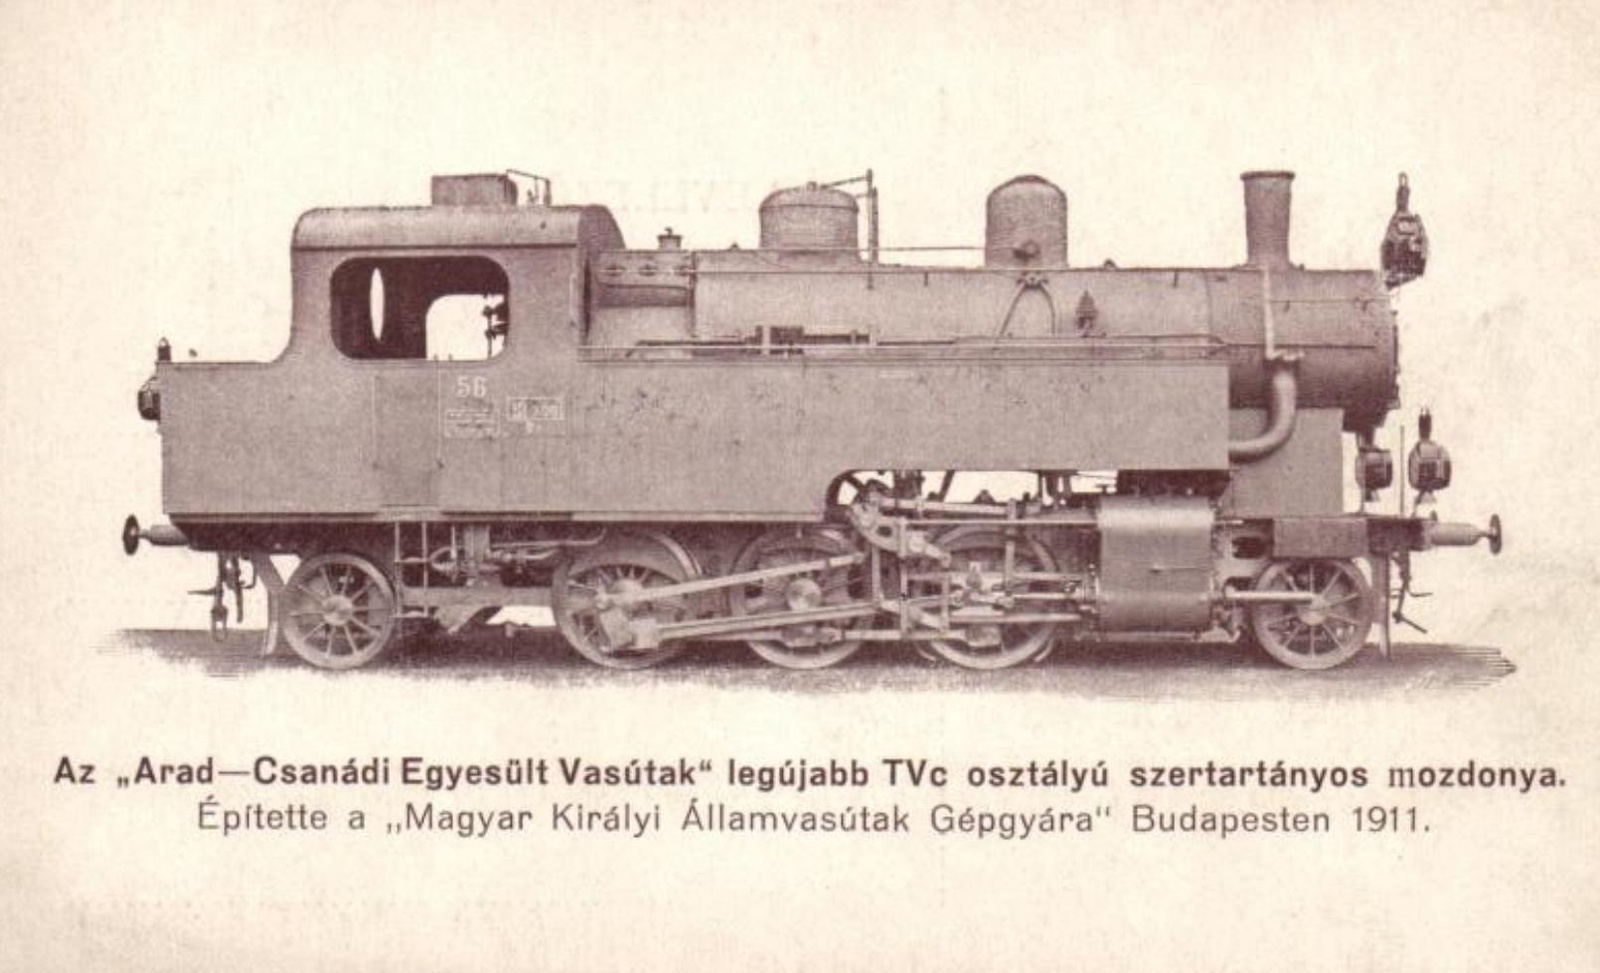 375 (ACsEV TVc, MÁVAG 1911)